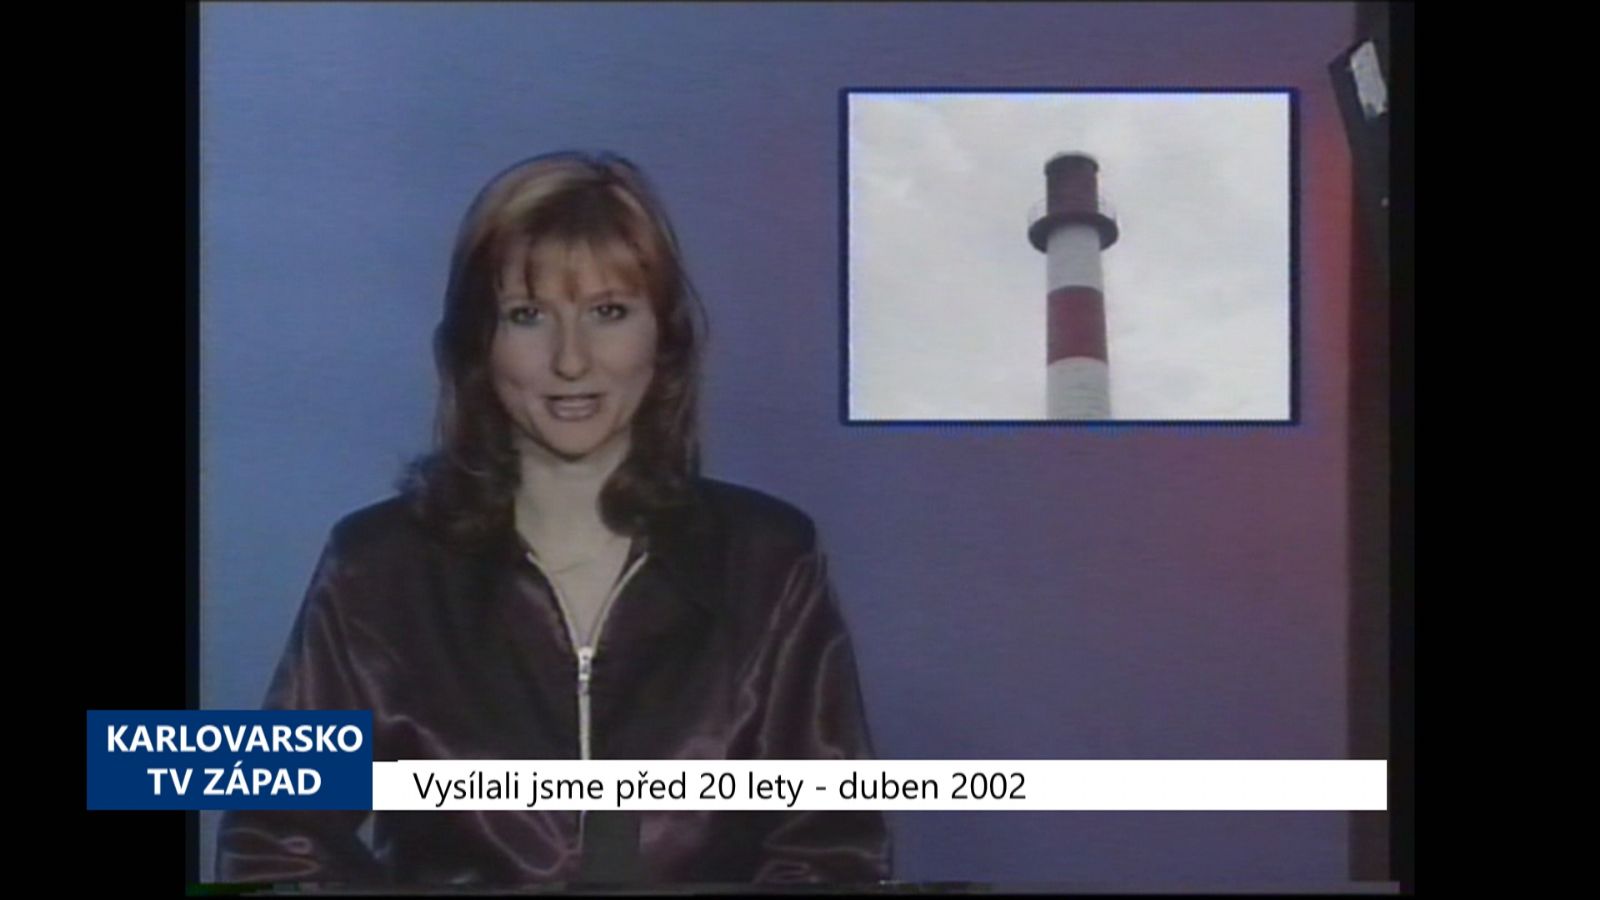 2002 – Cheb: Teplo zlevní od 1. května (TV Západ)